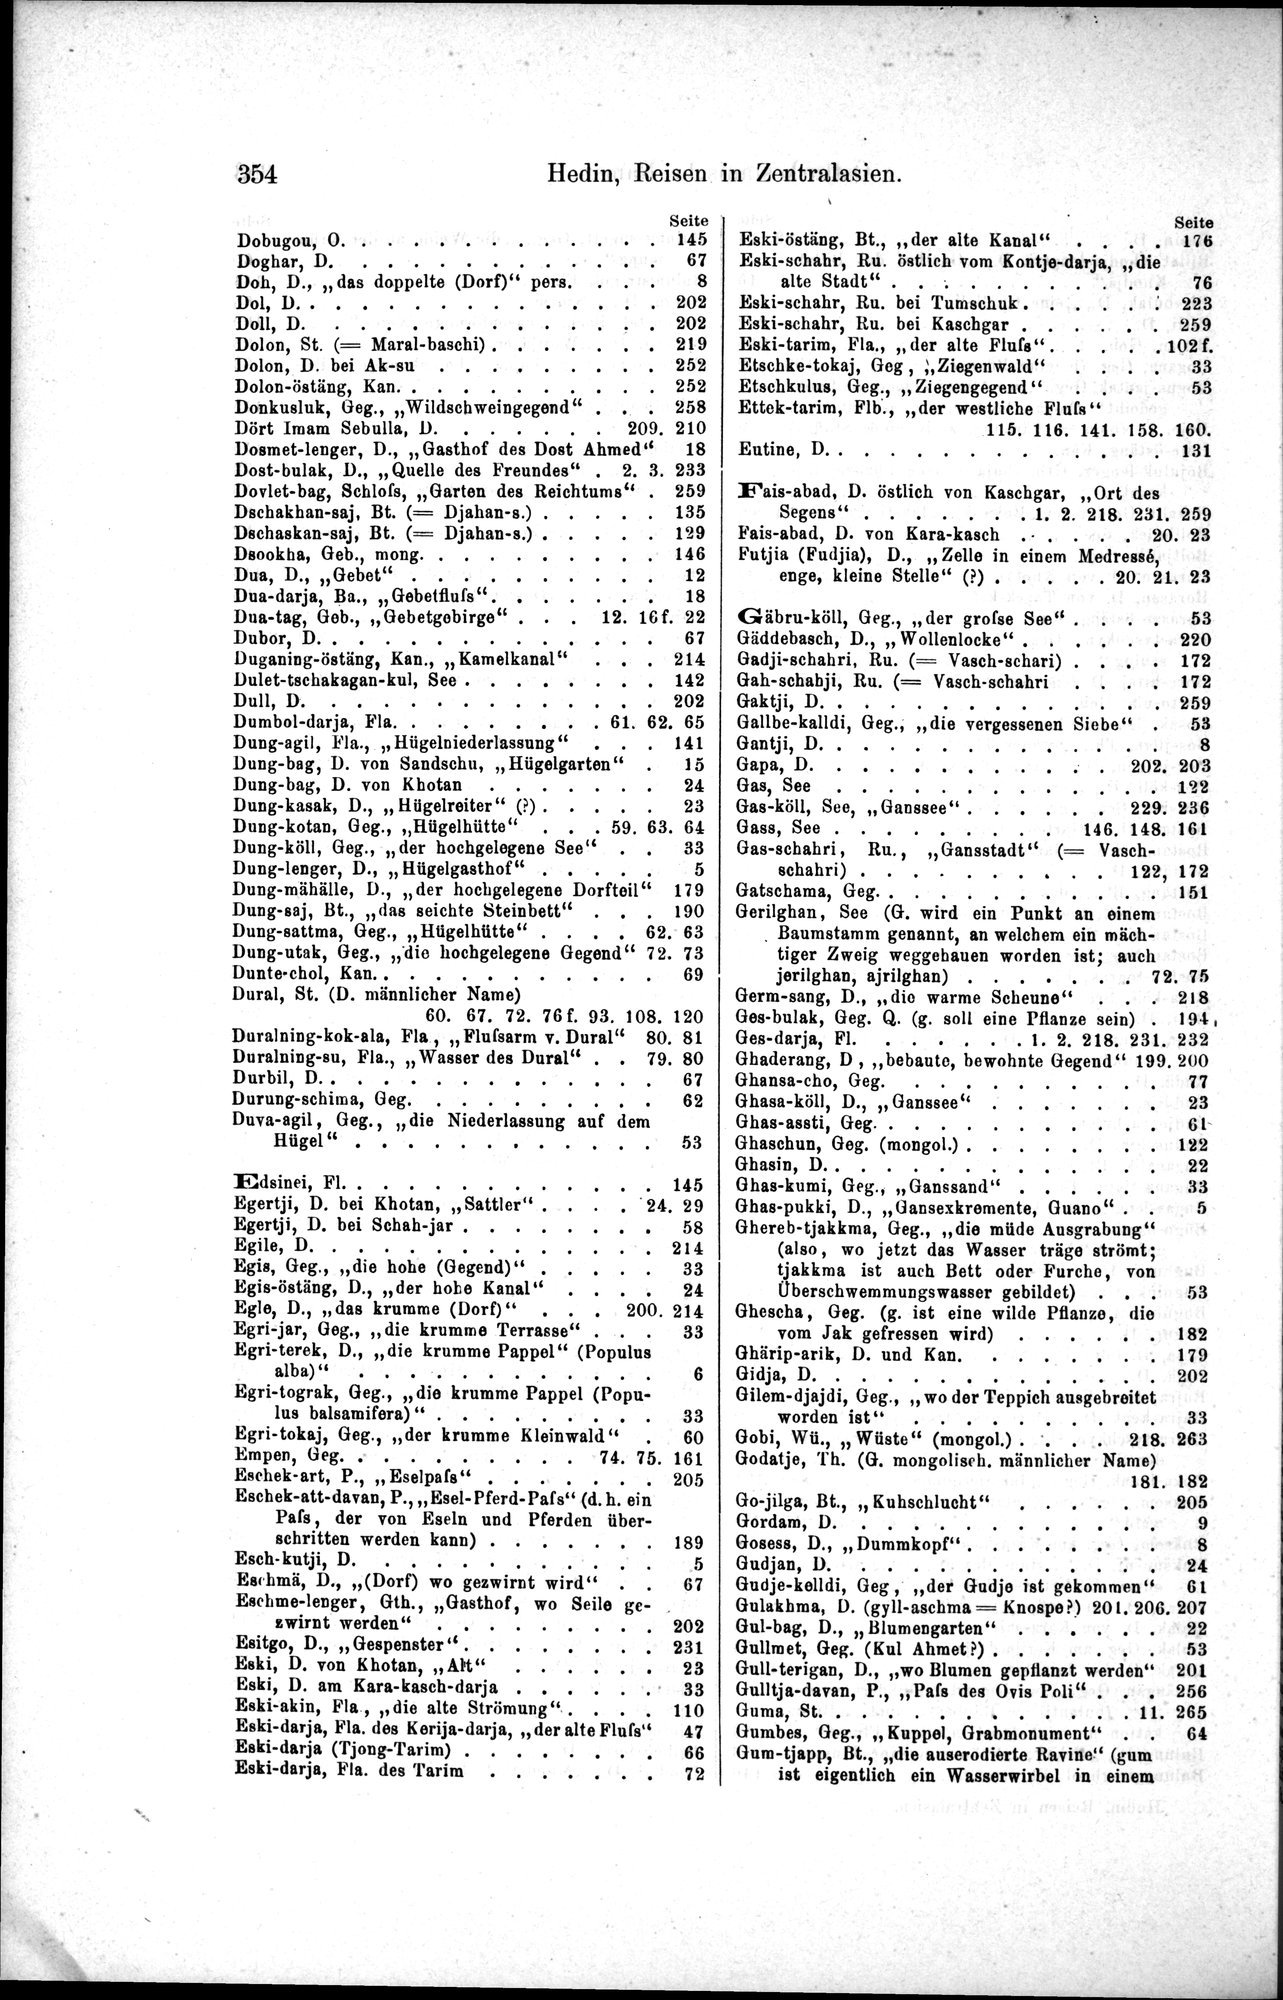 Die Geographische-Wissenschaftlichen Ergebnisse meiner Reisen in Zentralasien, 1894-1897 : vol.1 / Page 366 (Grayscale High Resolution Image)